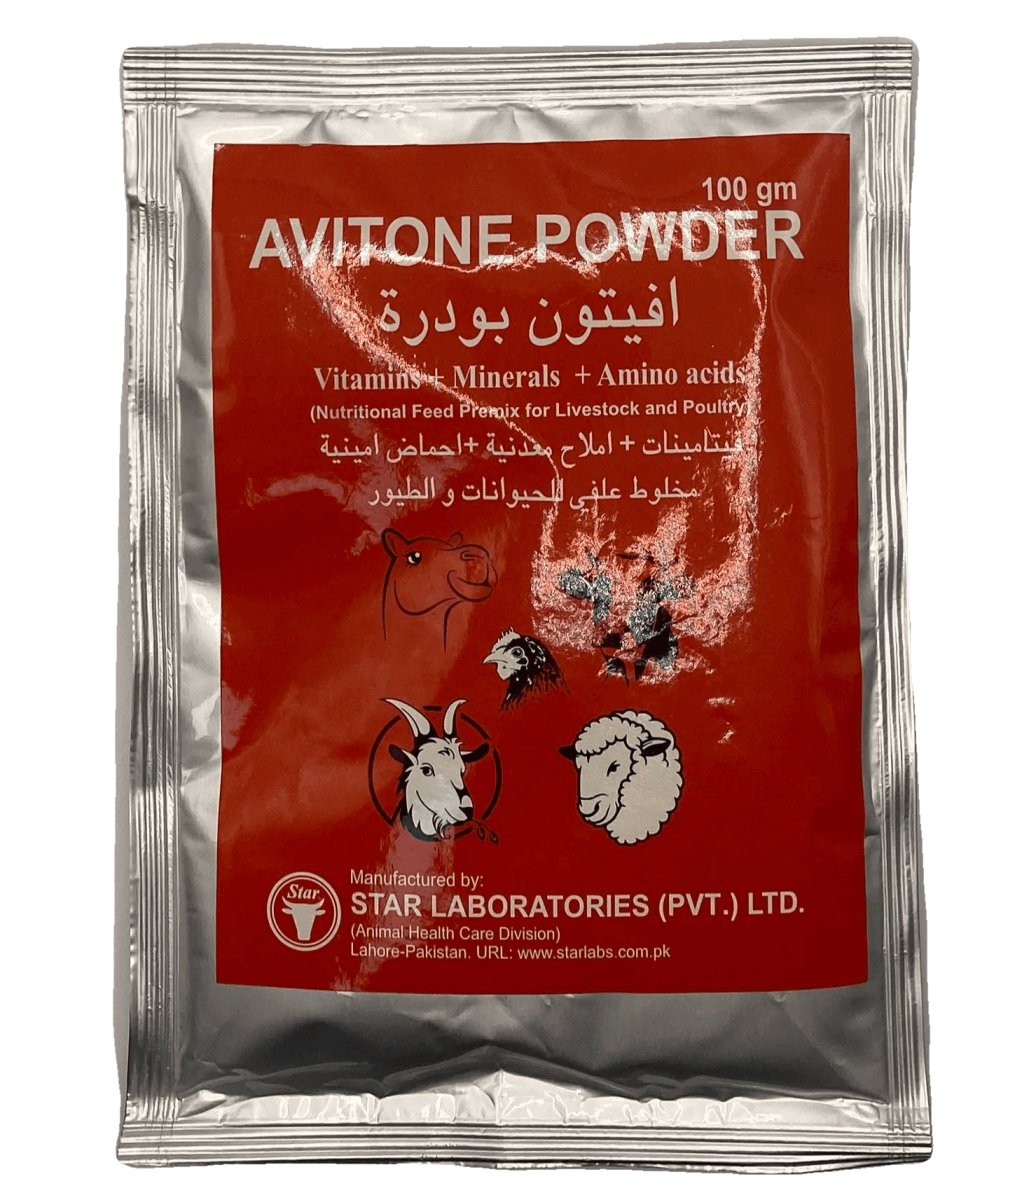 AVITONE POWDER 100 gm - Shopivet.com